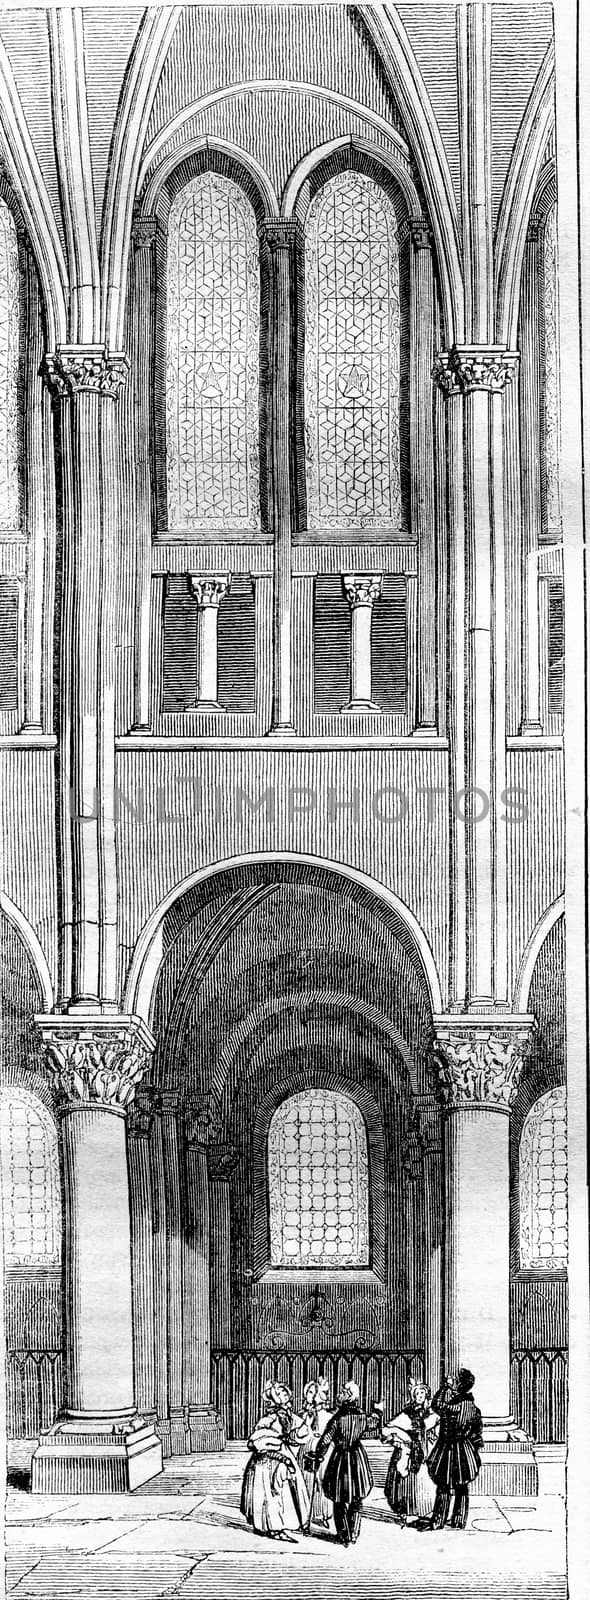 Twelfth century, Span of the apse of Saint Germain des Pres, vin by Morphart